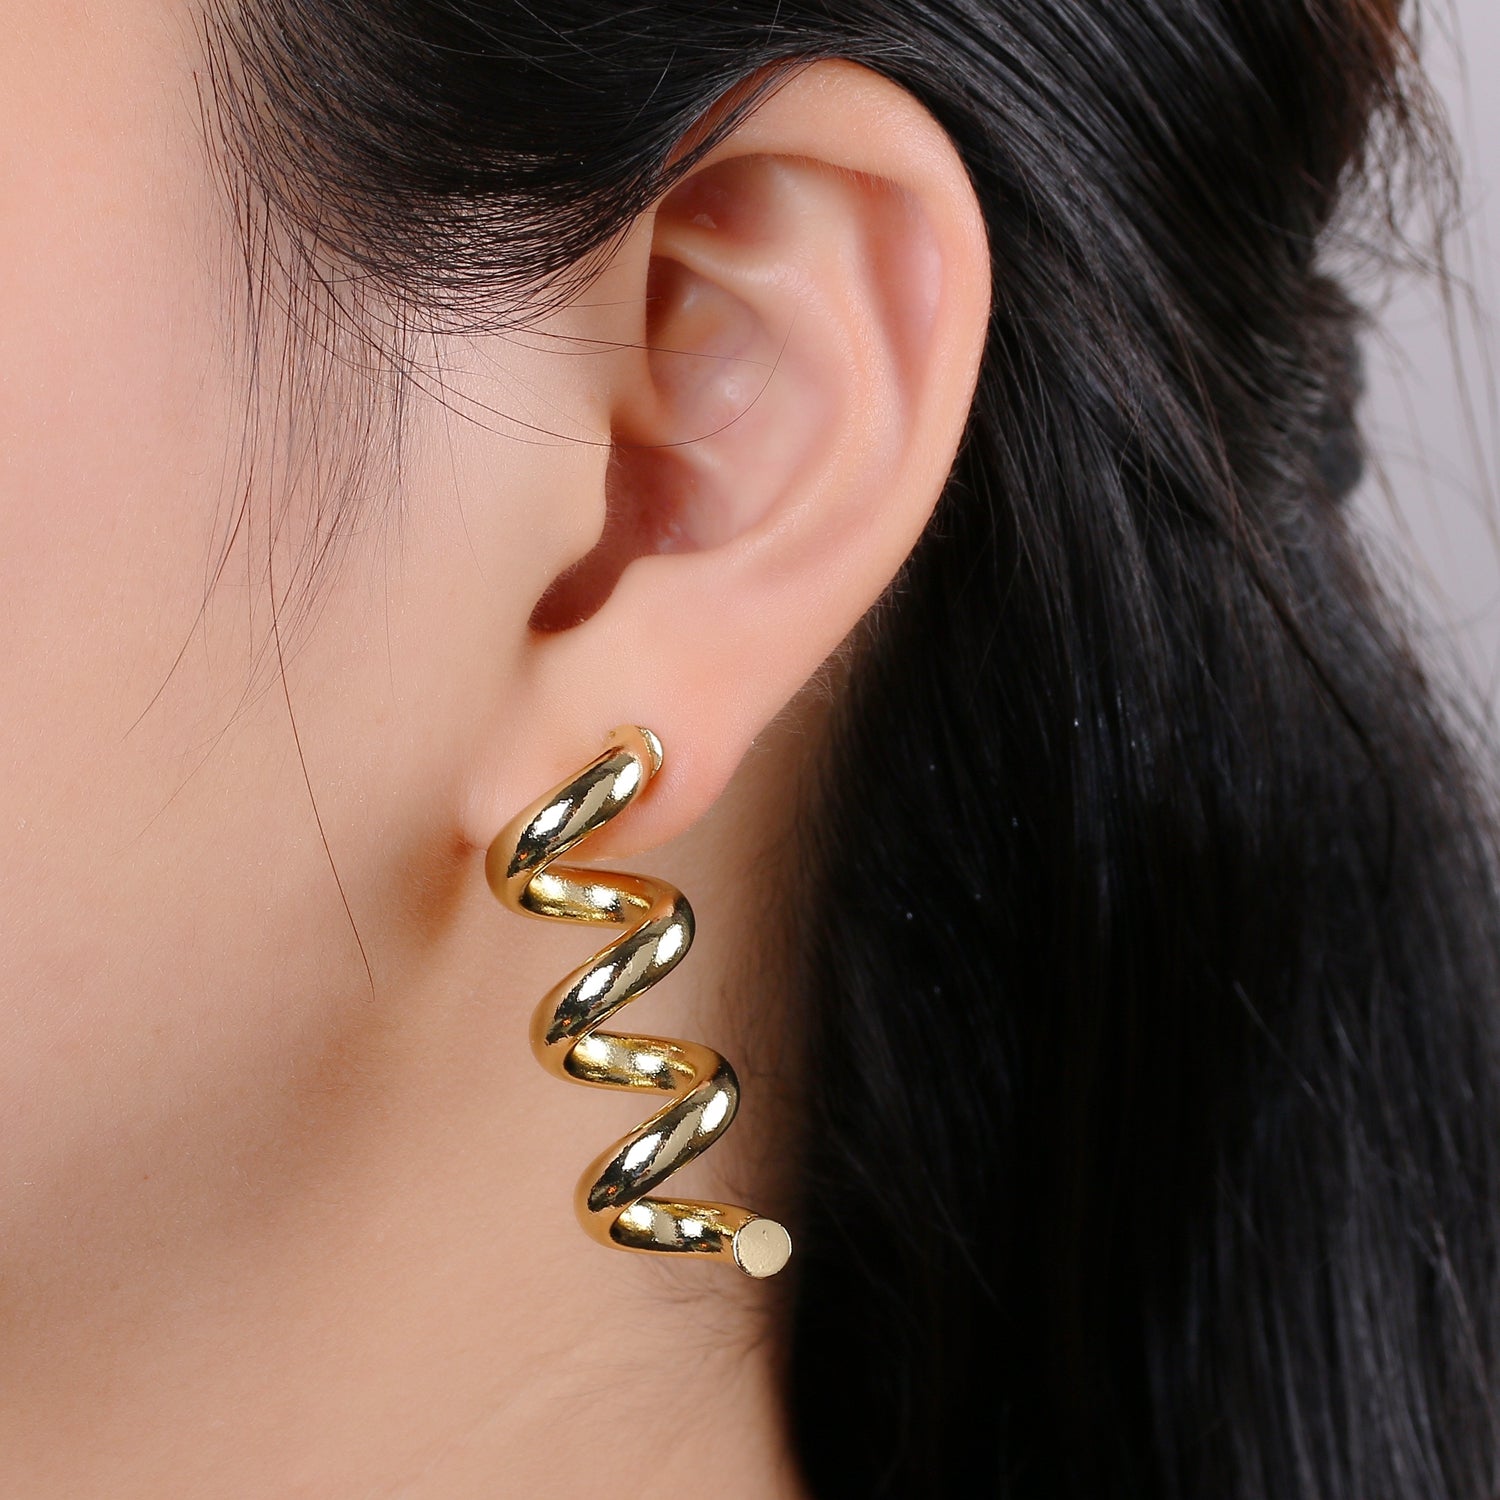 Gold Spiral Earrings, Gold Stud Earrings, Gold Corkscrew Earrings, Gold Chunky Earrings Bold Statement Jewelry Ear-1318 - DLUXCA